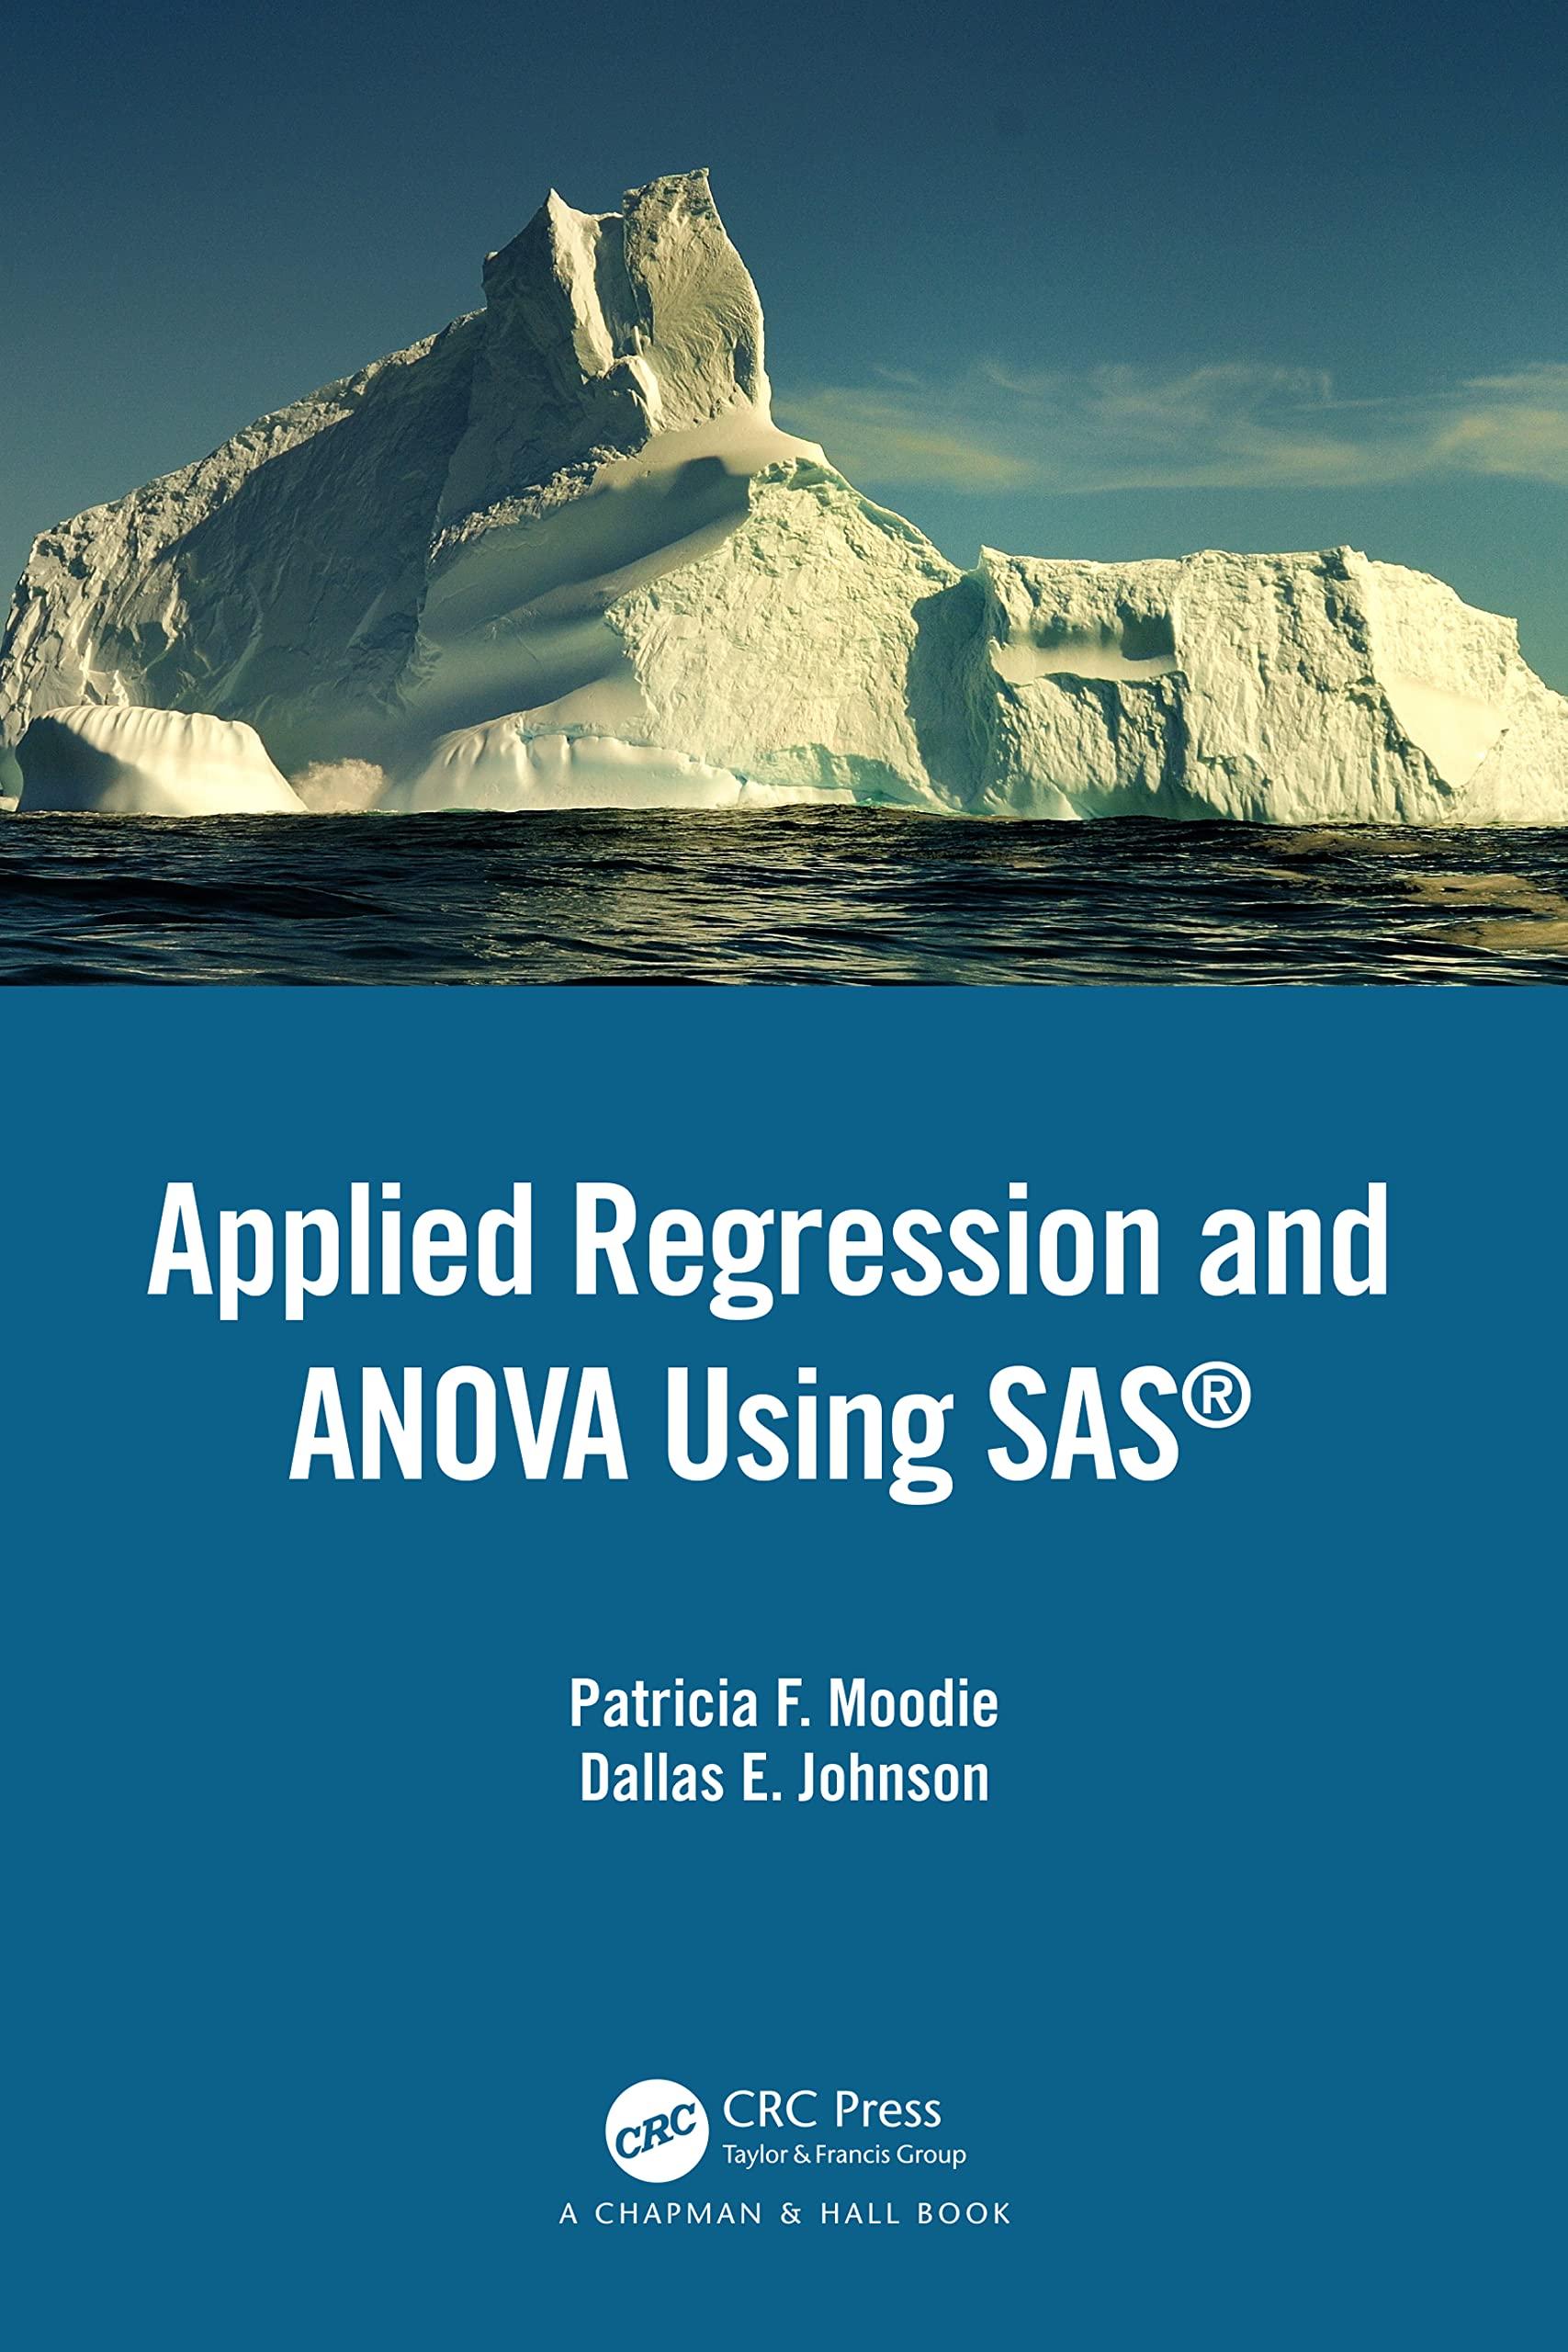 applied regression and anova using sas 1st edition patricia f. moodie, dallas e. johnson 1439869510,